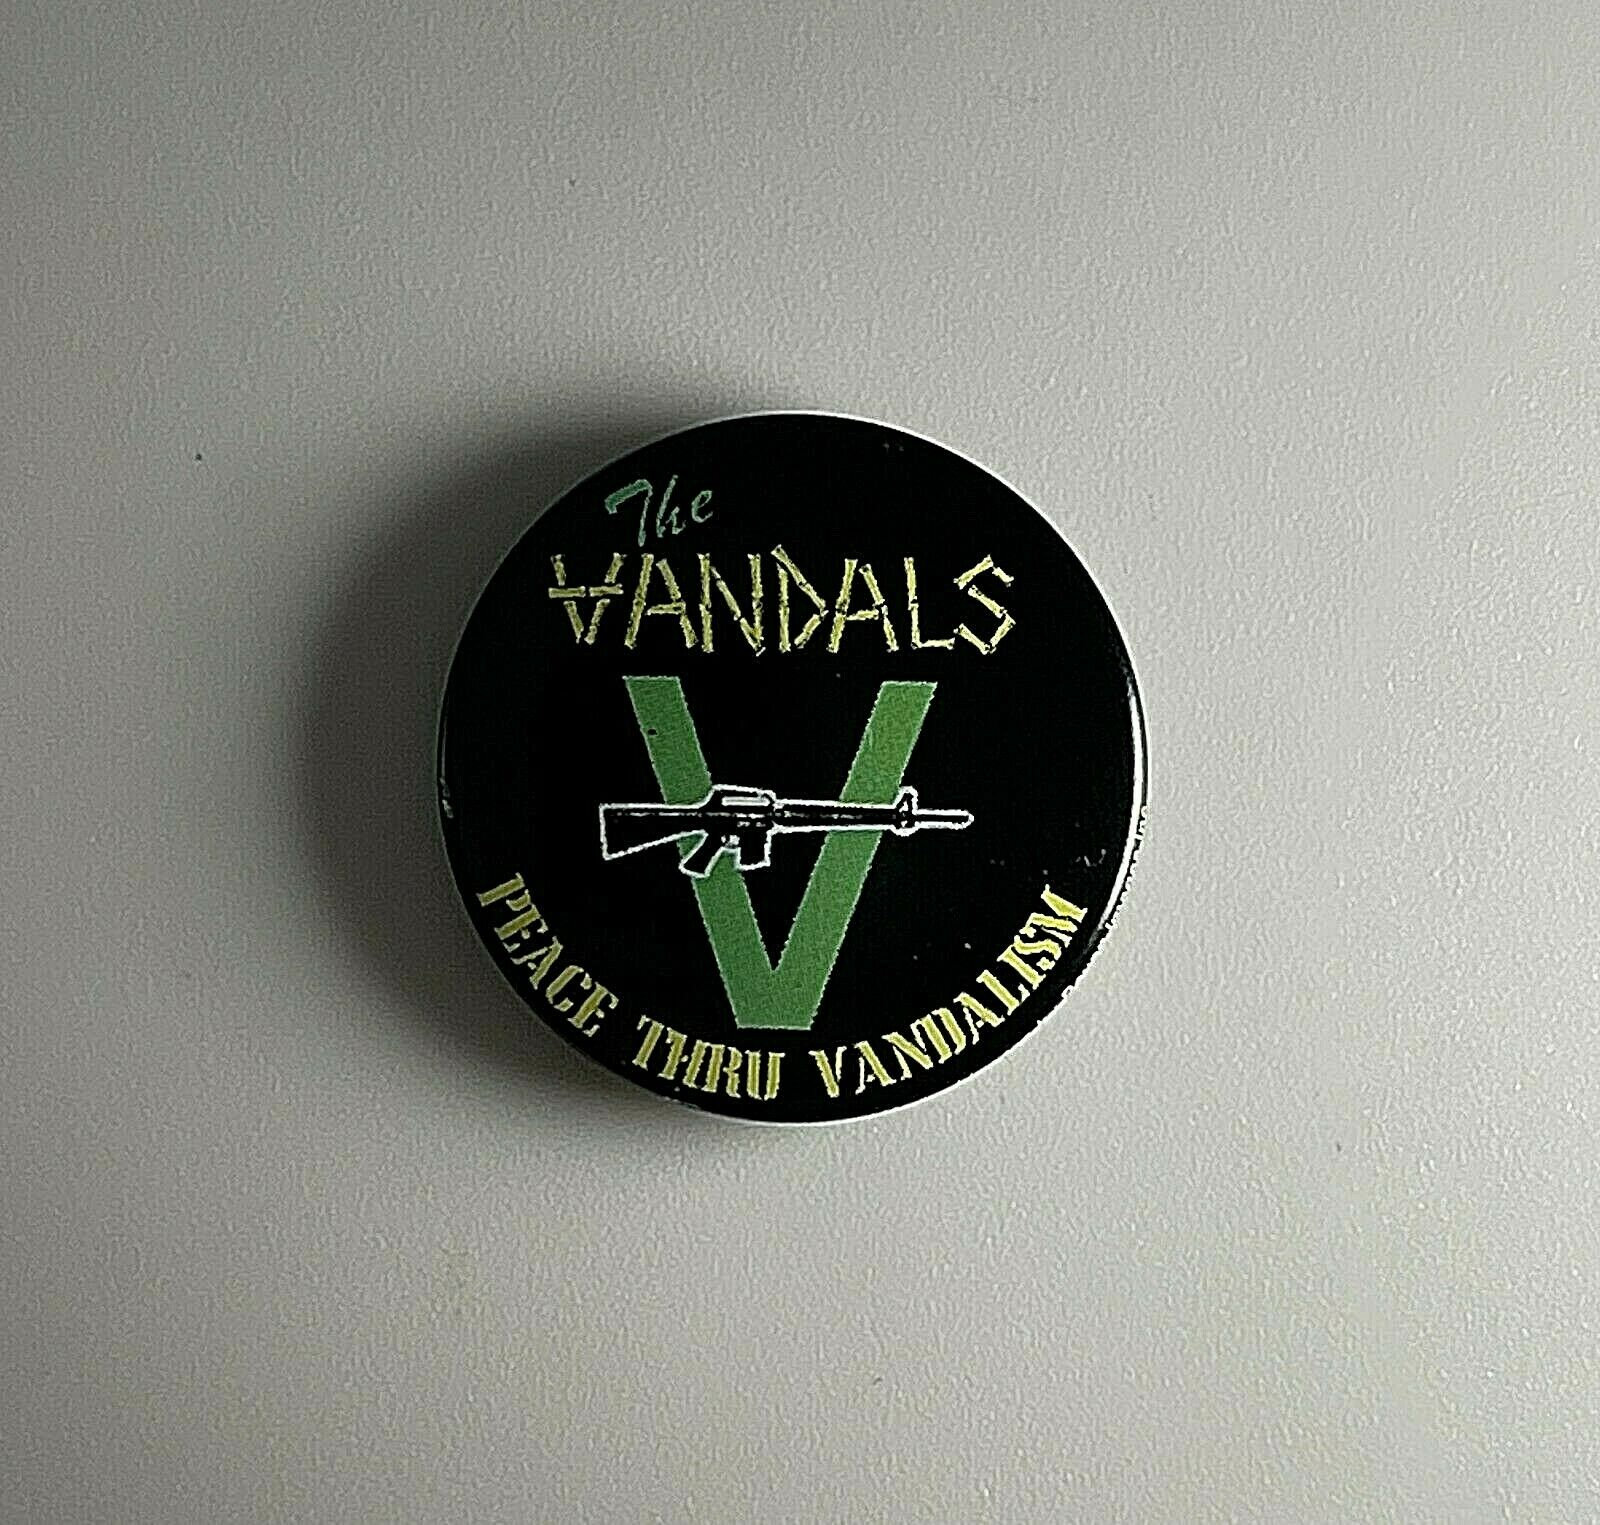 The Vandals Frieden Durch Vandalismus 2, 5 cm Button V001B Badge Pin von Heavylowmerchandise